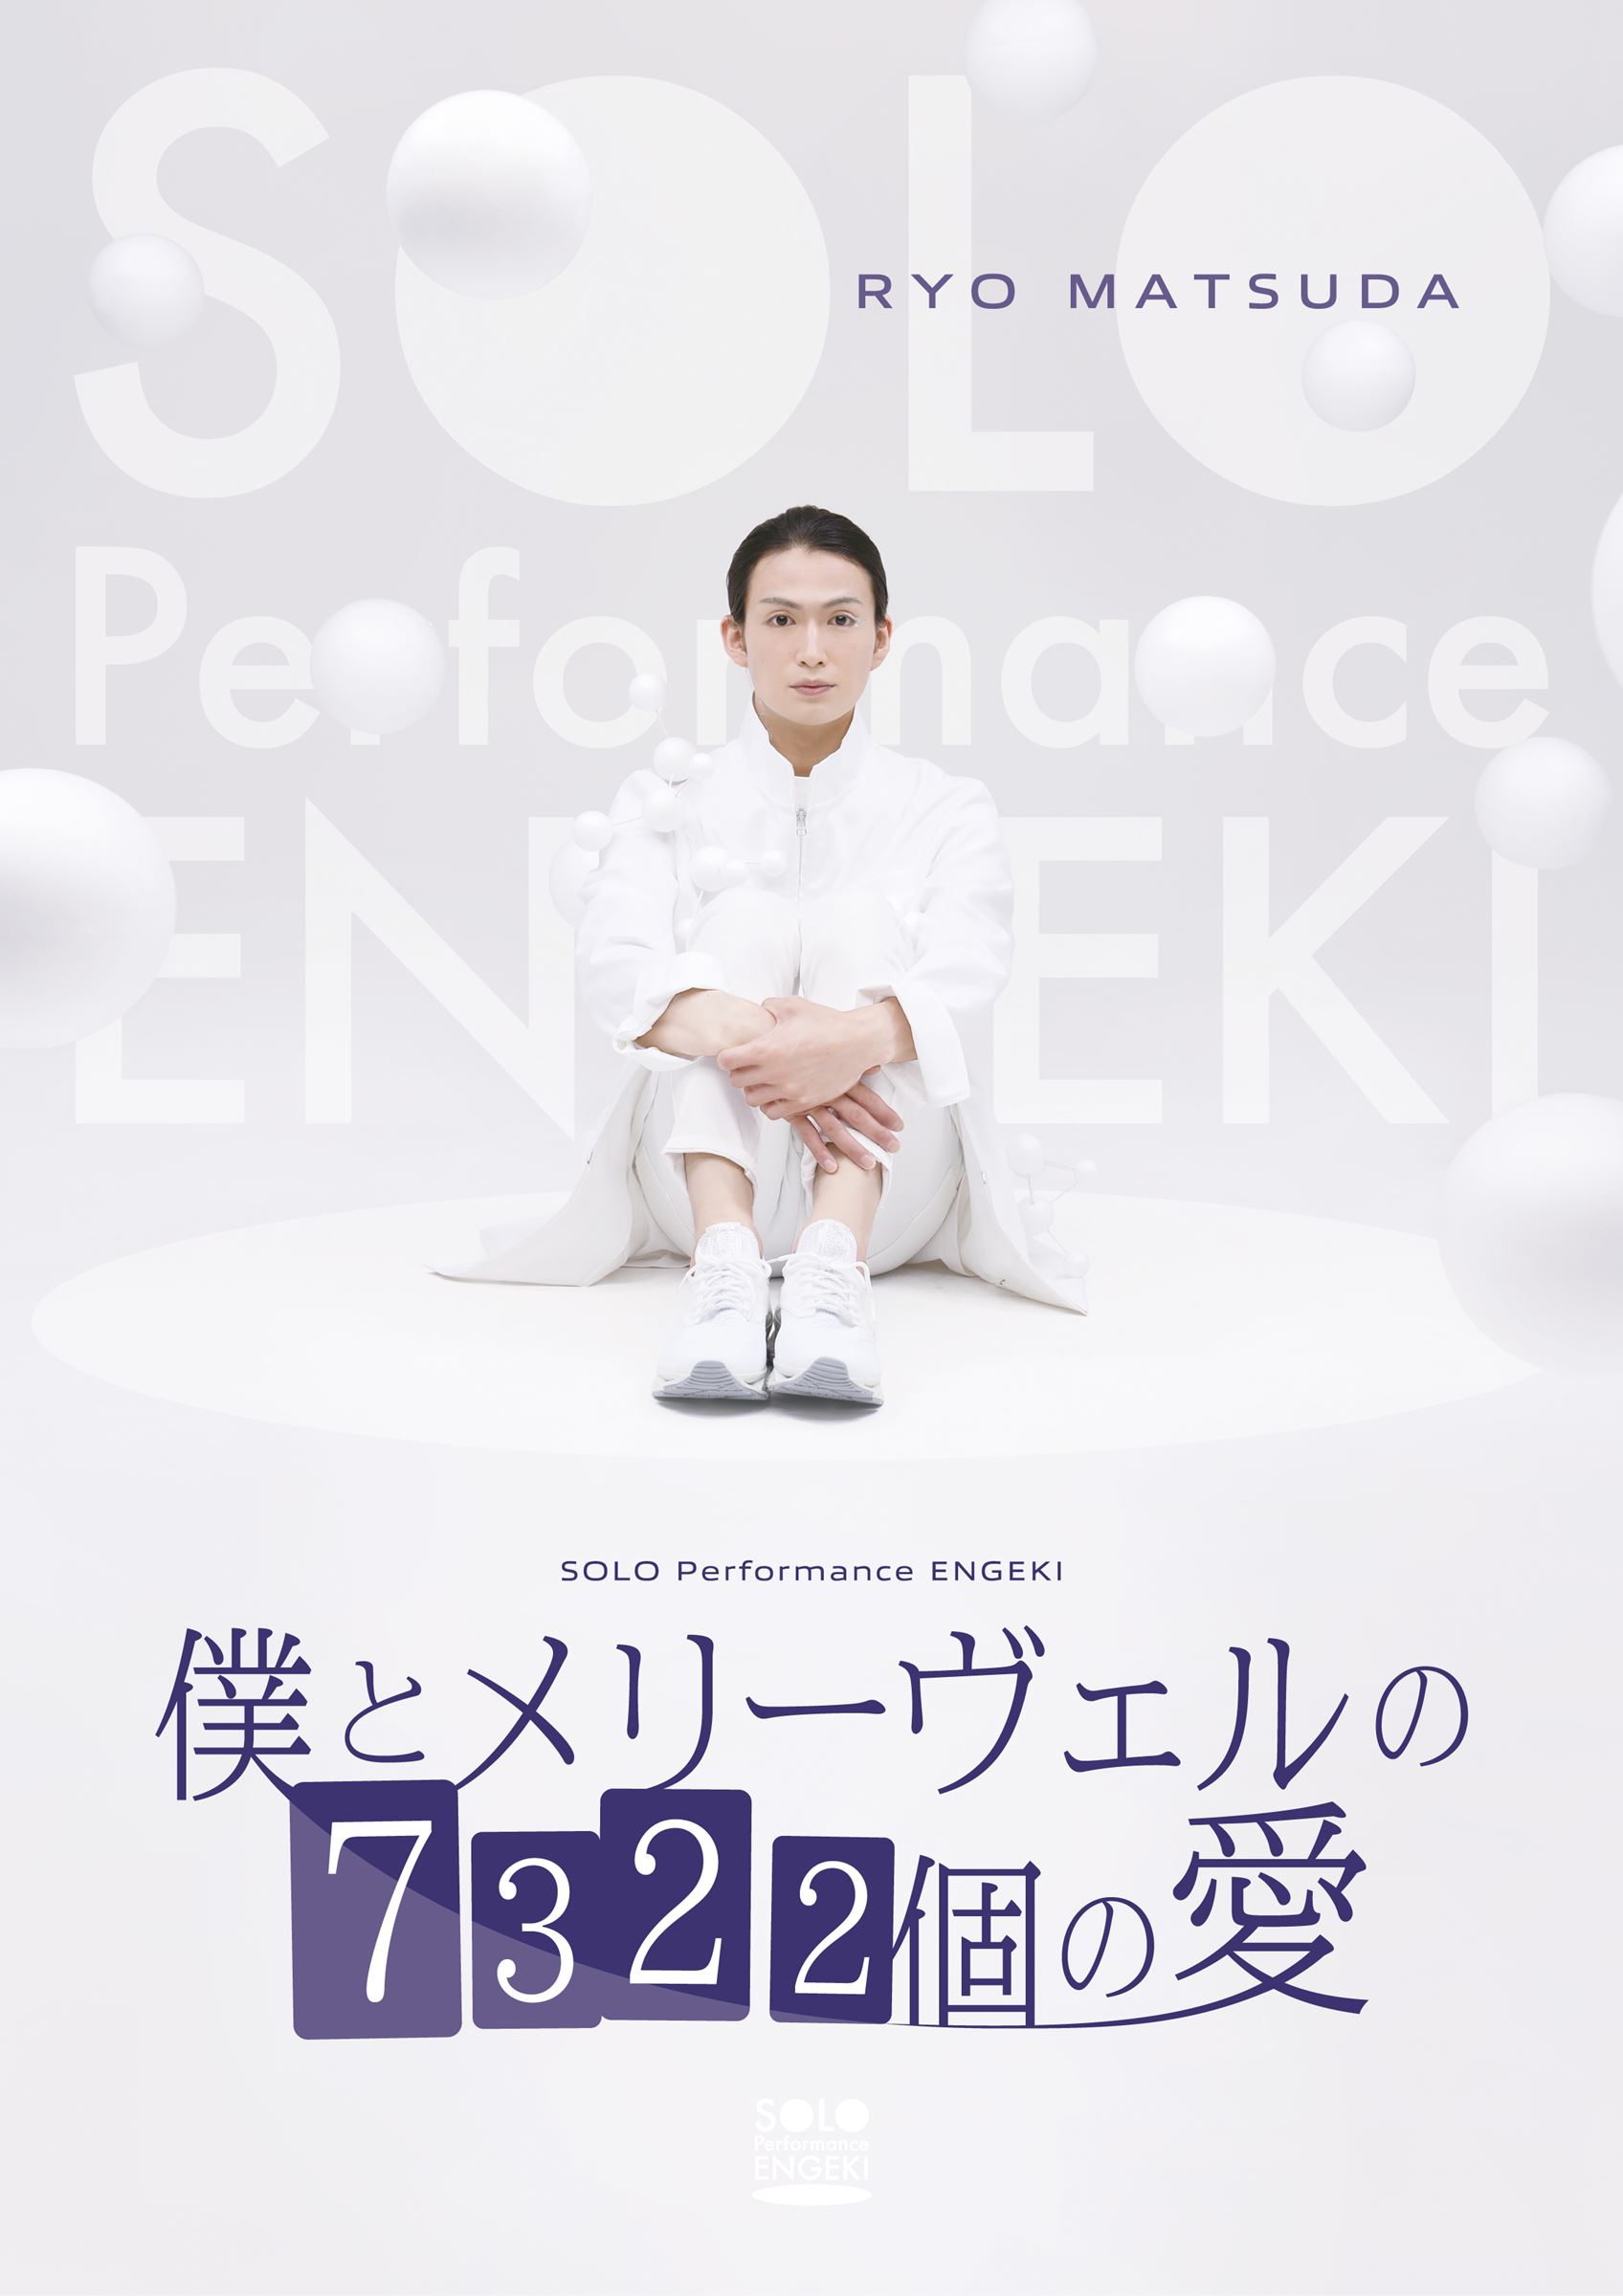 松田凌 SOLO Performance ENGEKI 『僕とメリーヴェルの7322個の愛』 (c)東映